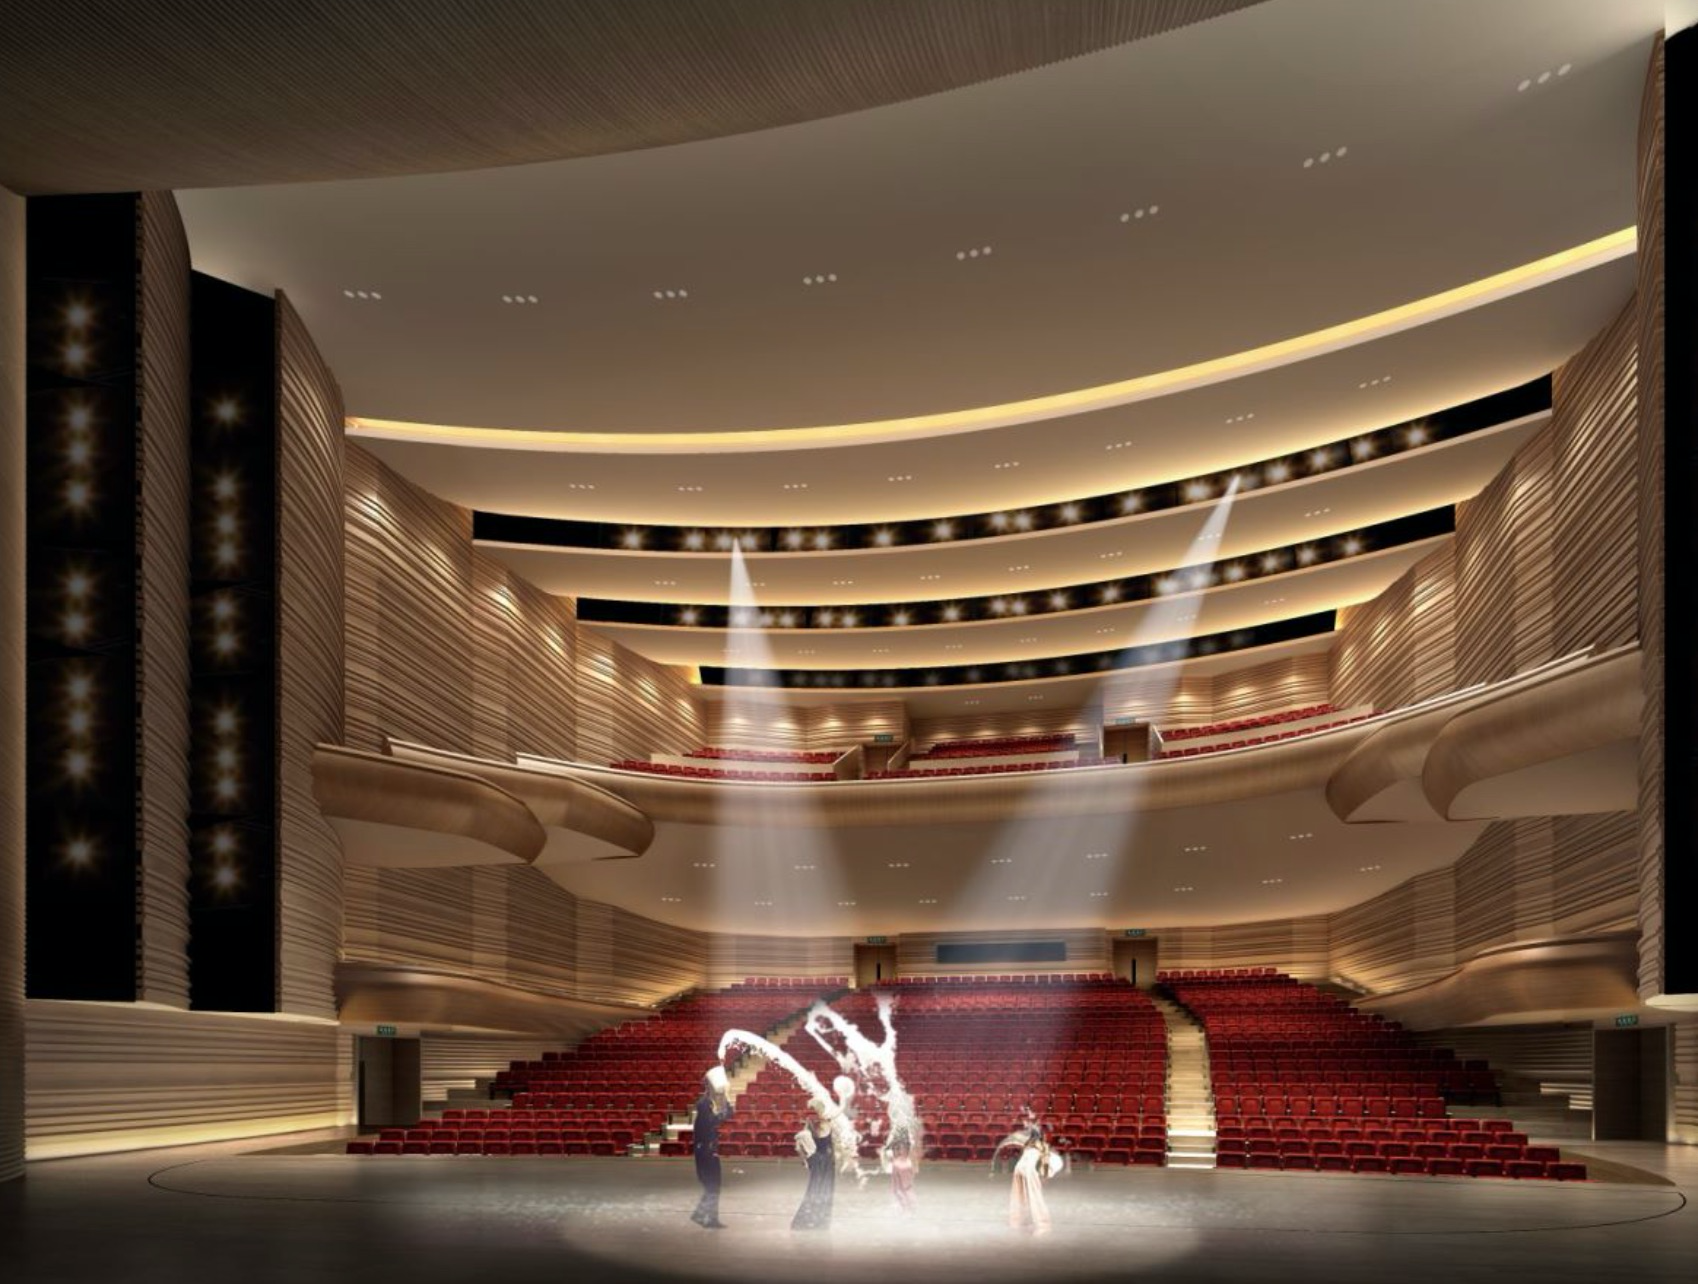 光明文化艺术中心盛大启幕  将打造成为深圳北部城市文化会客厅